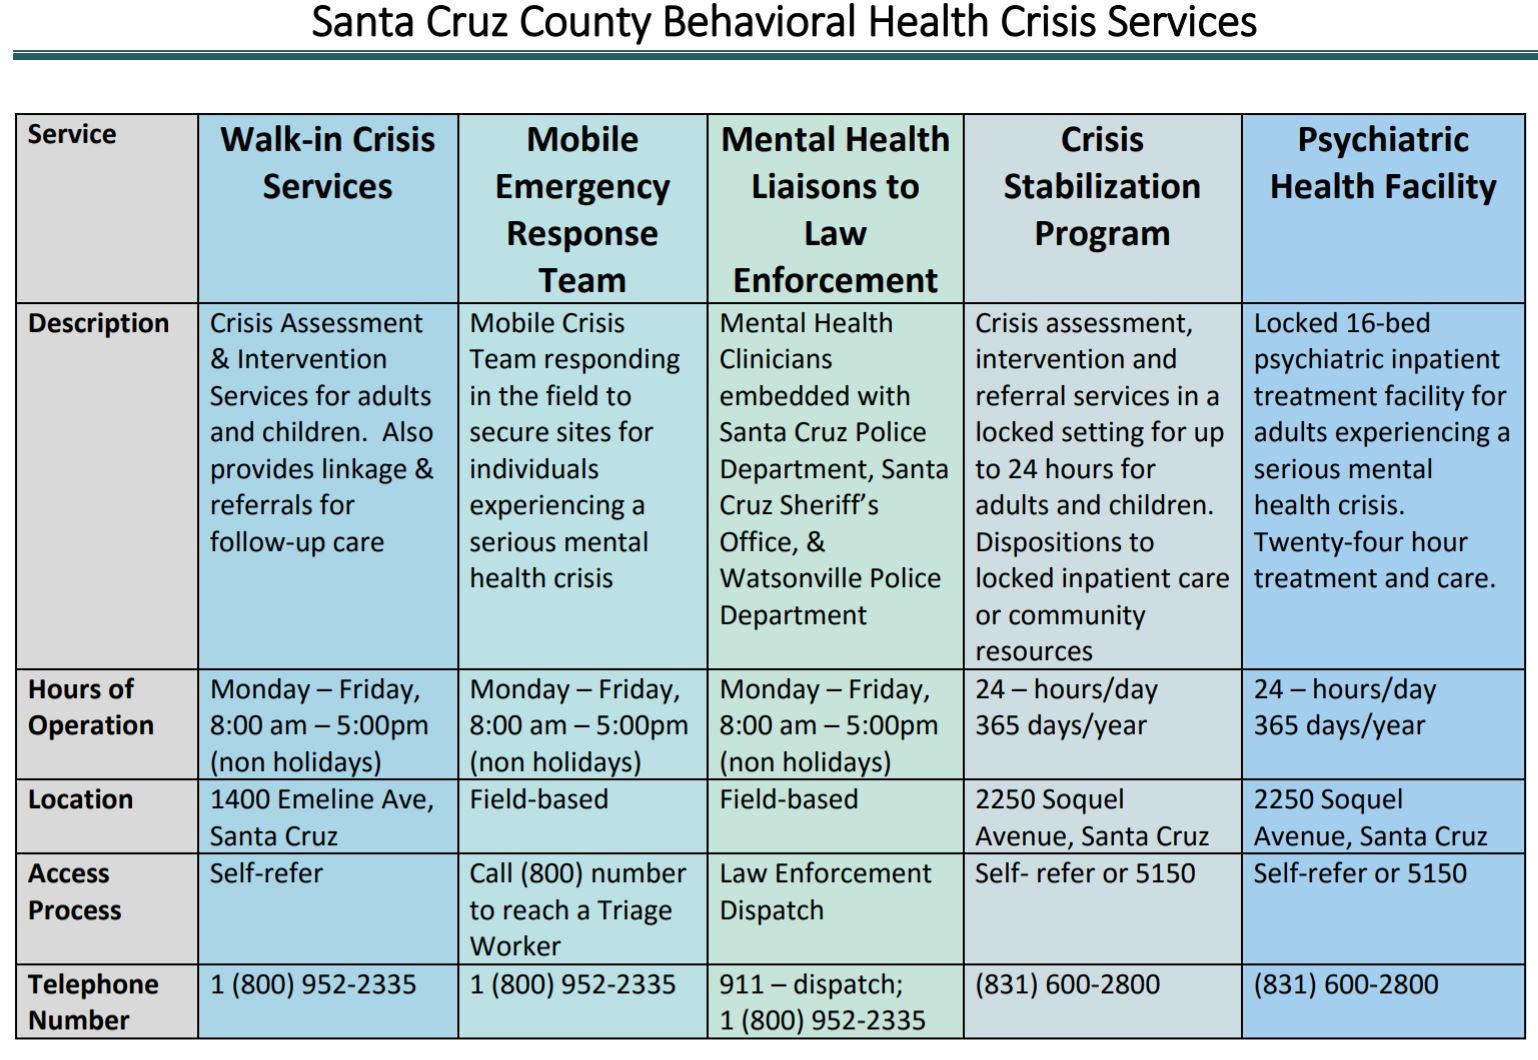 cuadro de respuestas a las crisis de salud mental en el condado de Santa Cruz